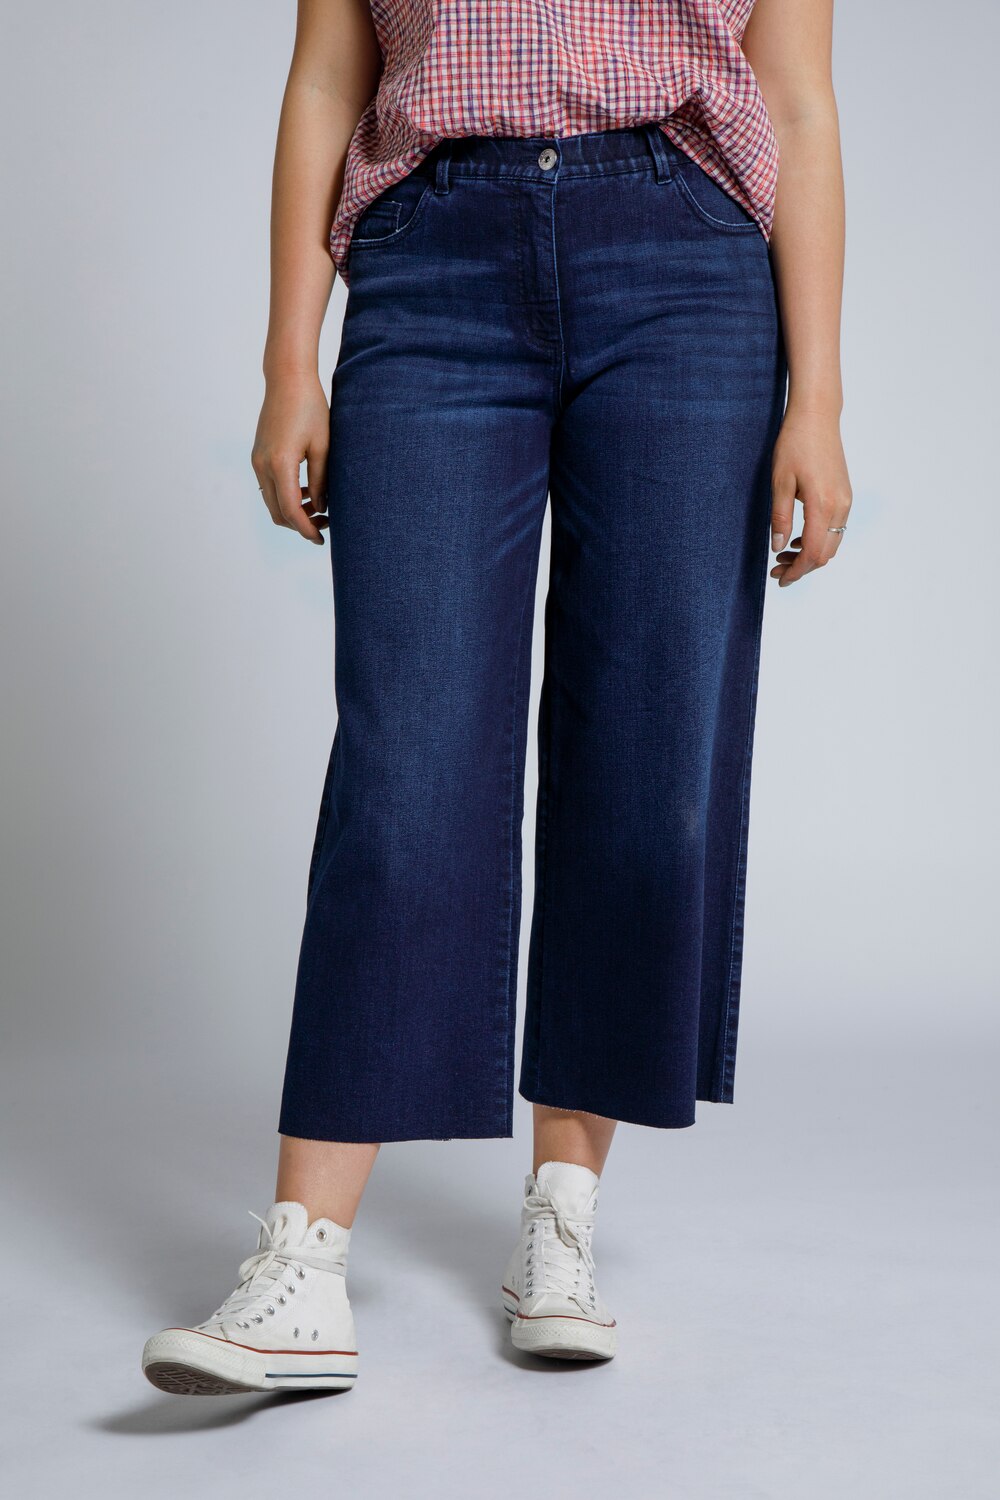 Grote Maten jeans culotte, Dames, blauw, Maat: 50, Katoen, Studio Untold